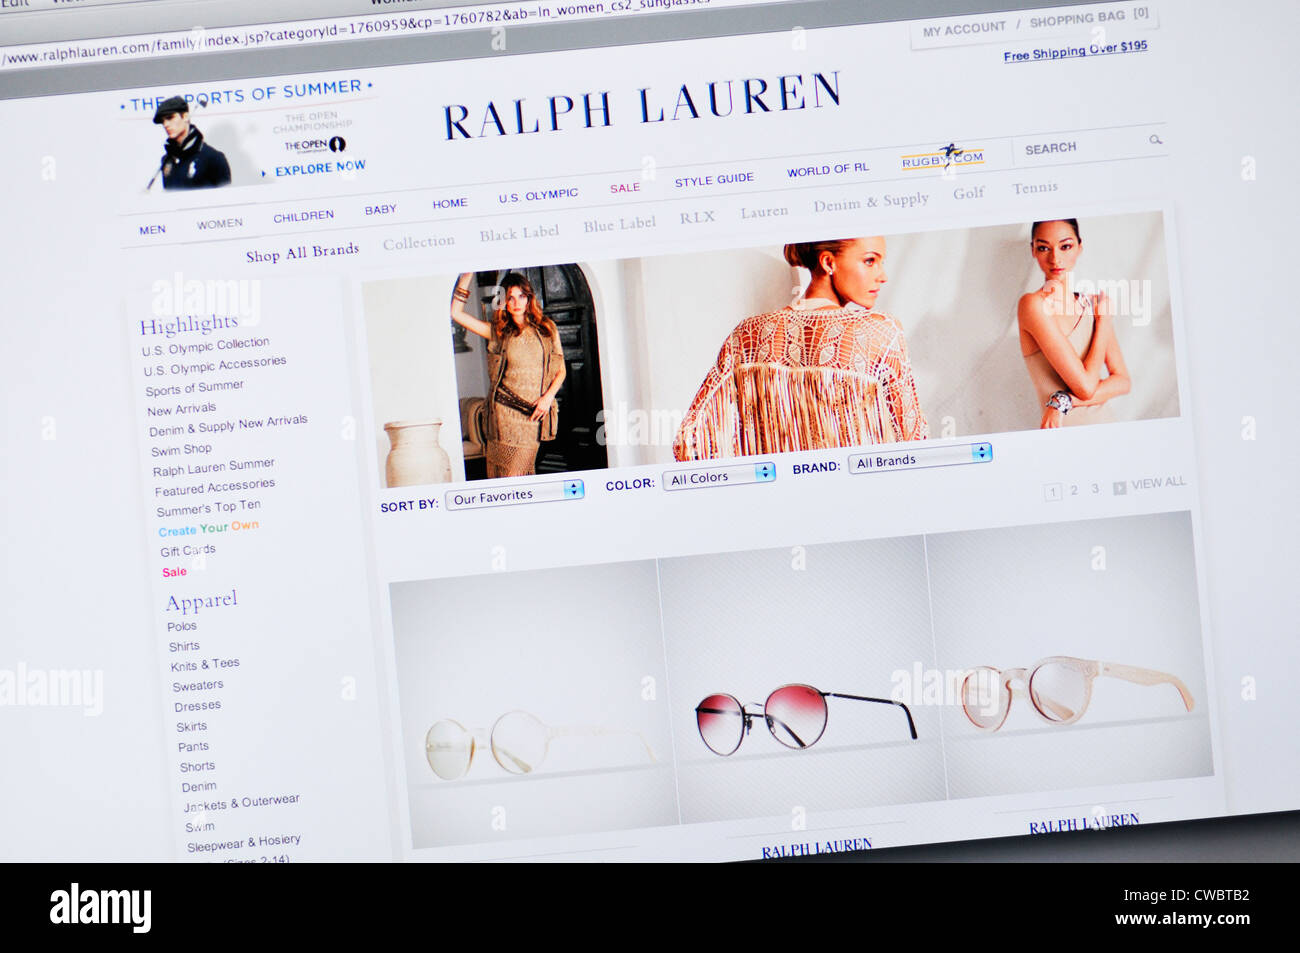 polo ralph lauren website